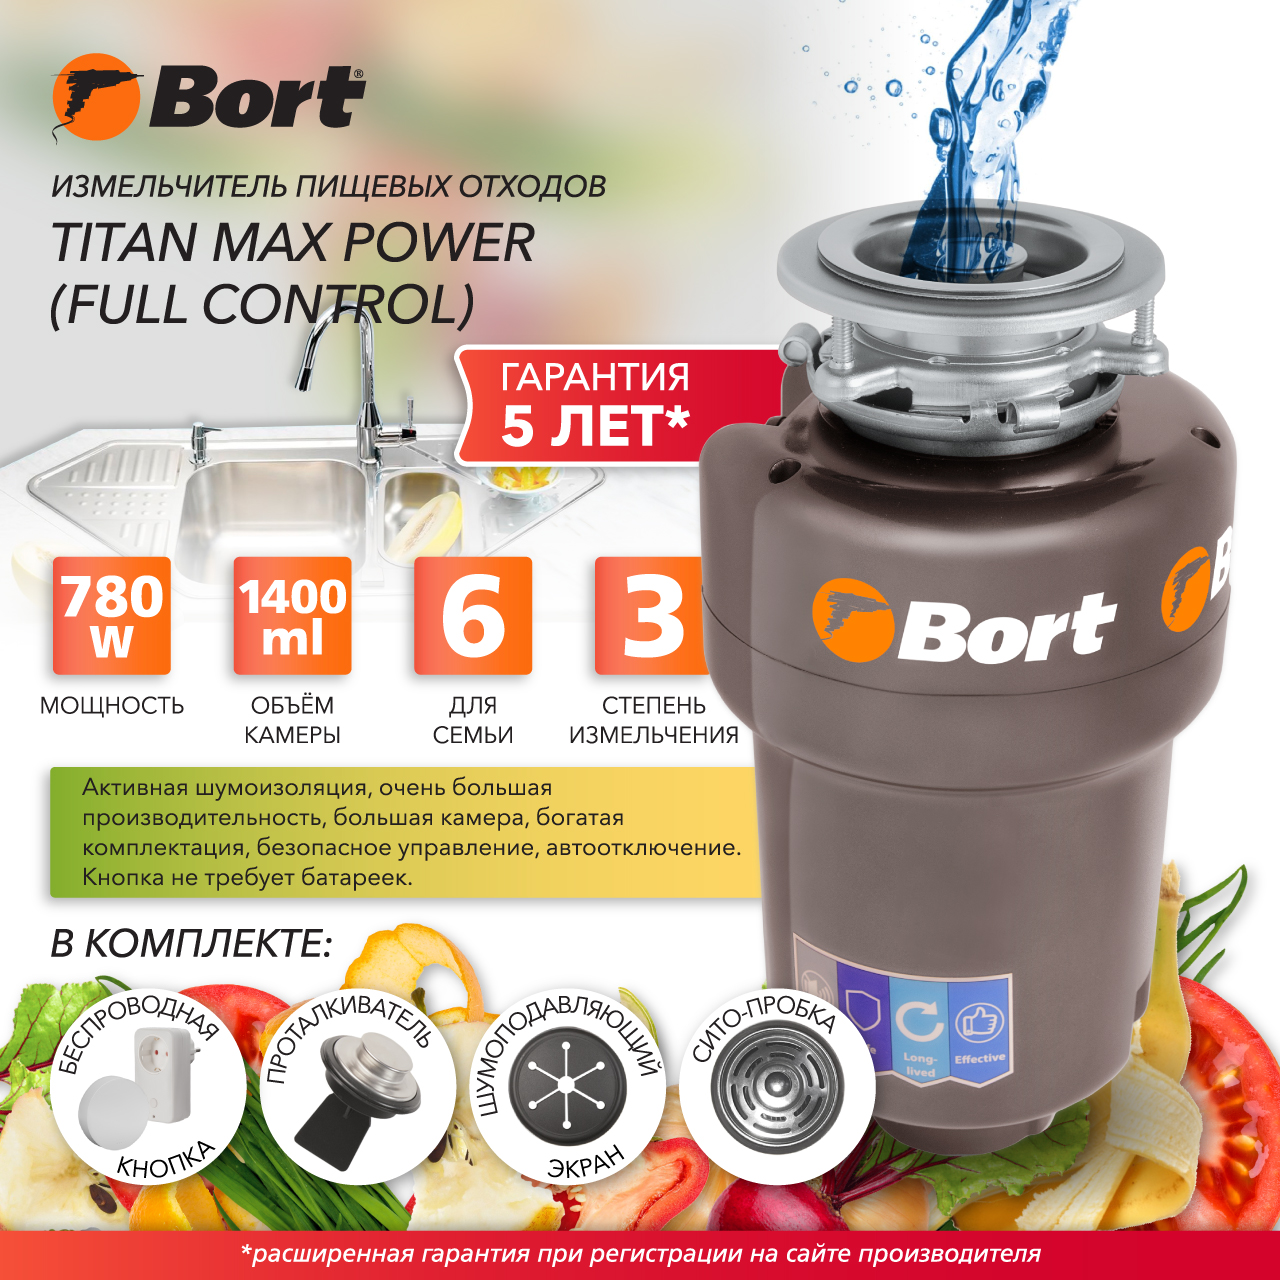 Измельчитель пищевых отходов Bort TITAN MAX POWER FULLCONTROL (93410266) серебристый измельчитель пищевых отходов bort titan 5000 control 93410259 серебристый